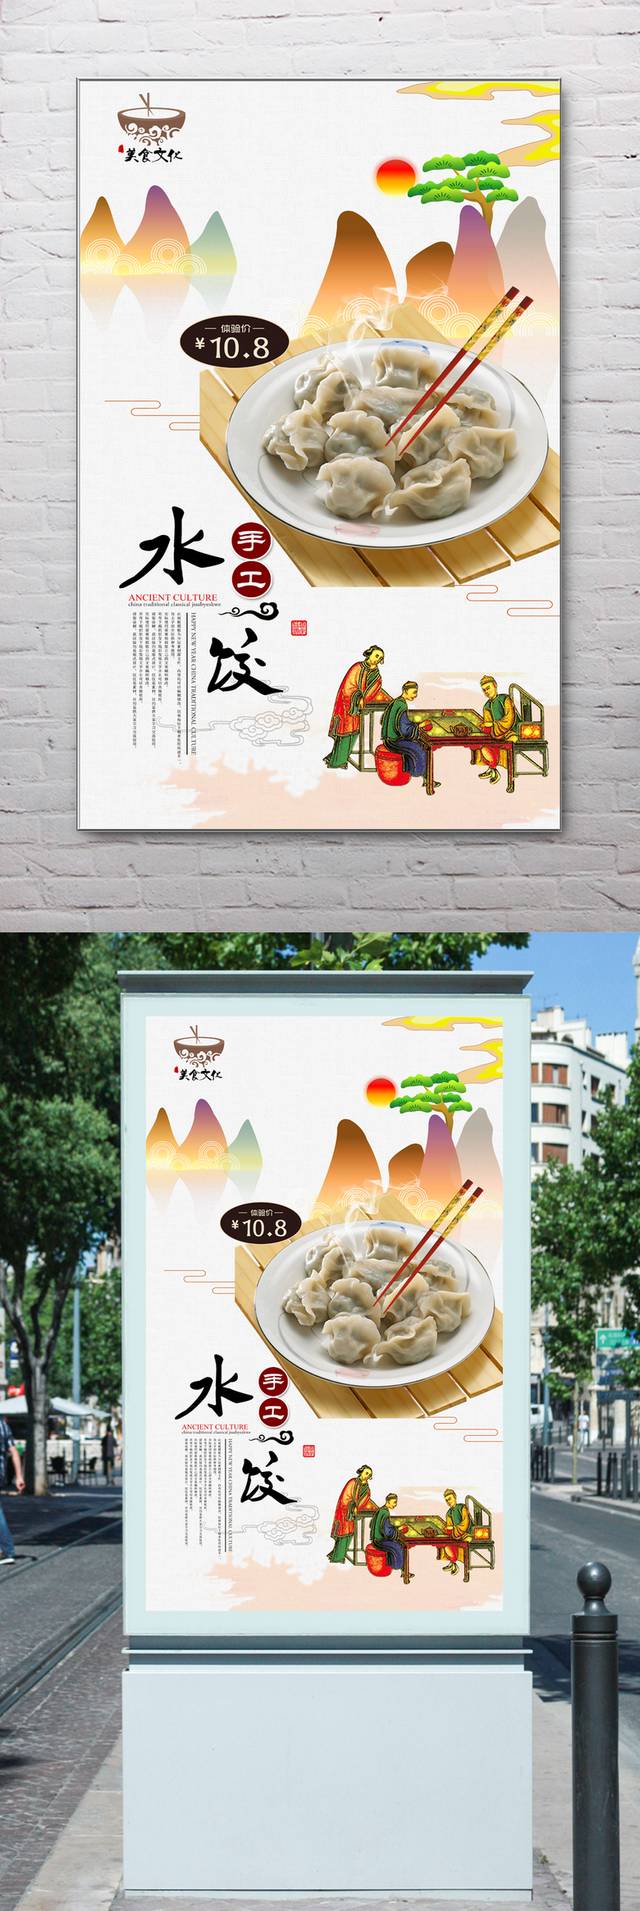 古典哈尔滨水饺宣传海报设计